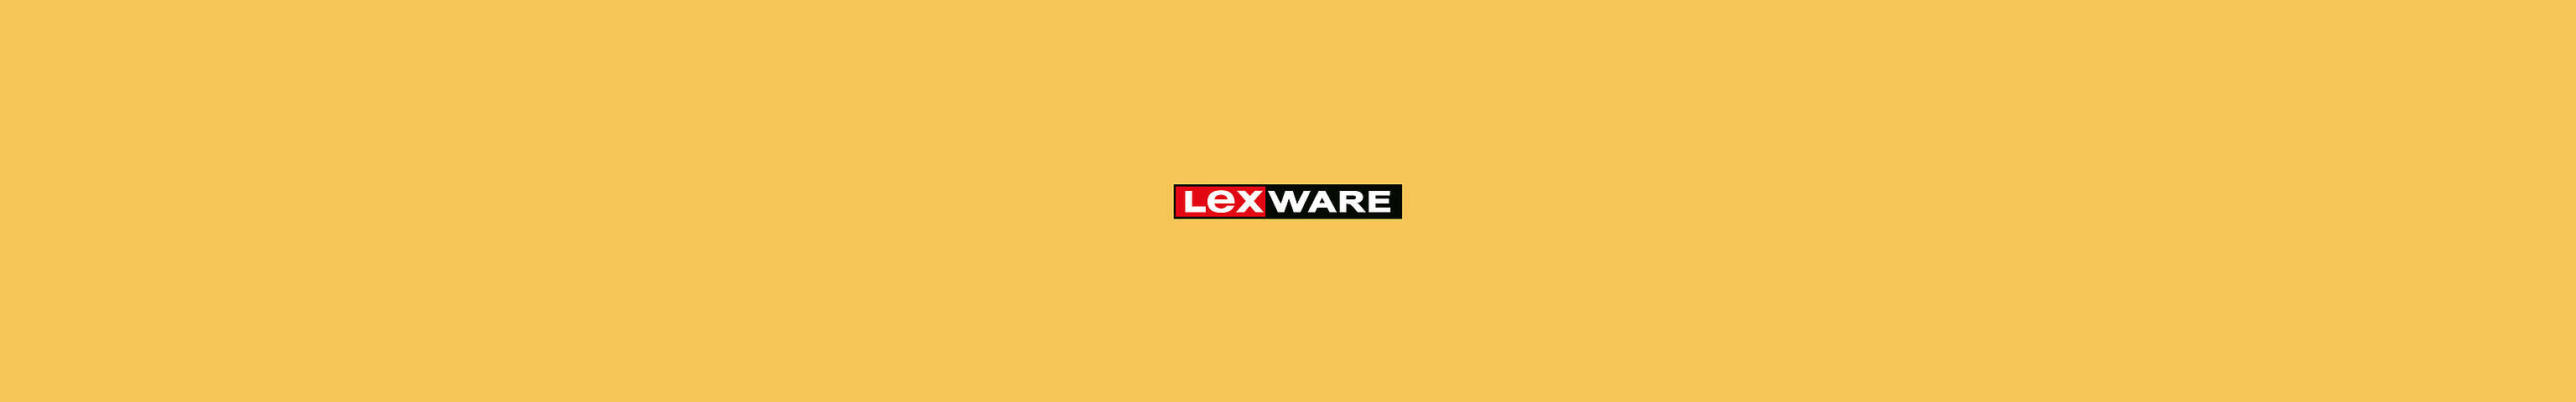 Lexware Logo auf gelbem Hintergrund